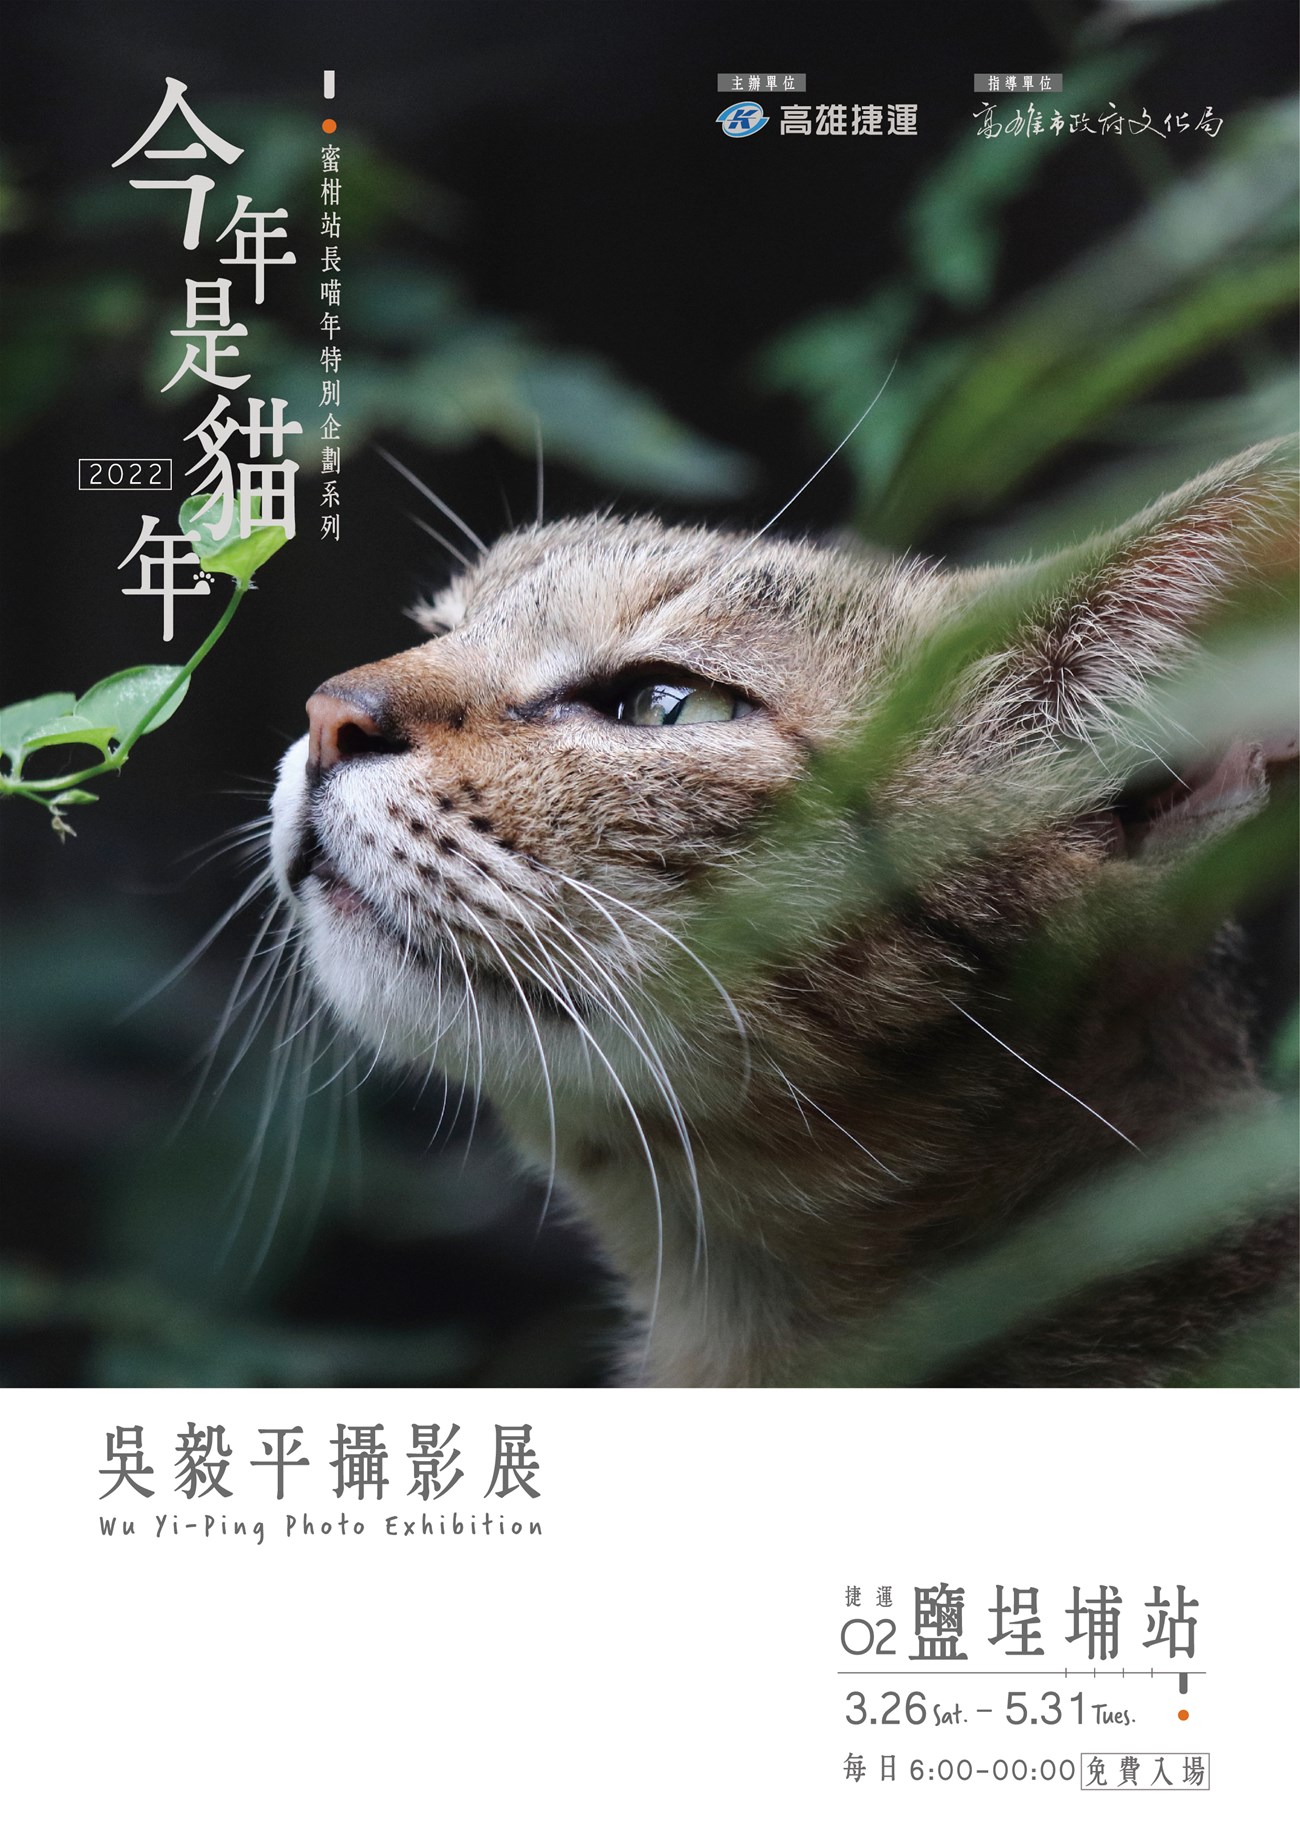 今年是貓年-吳毅平攝影展